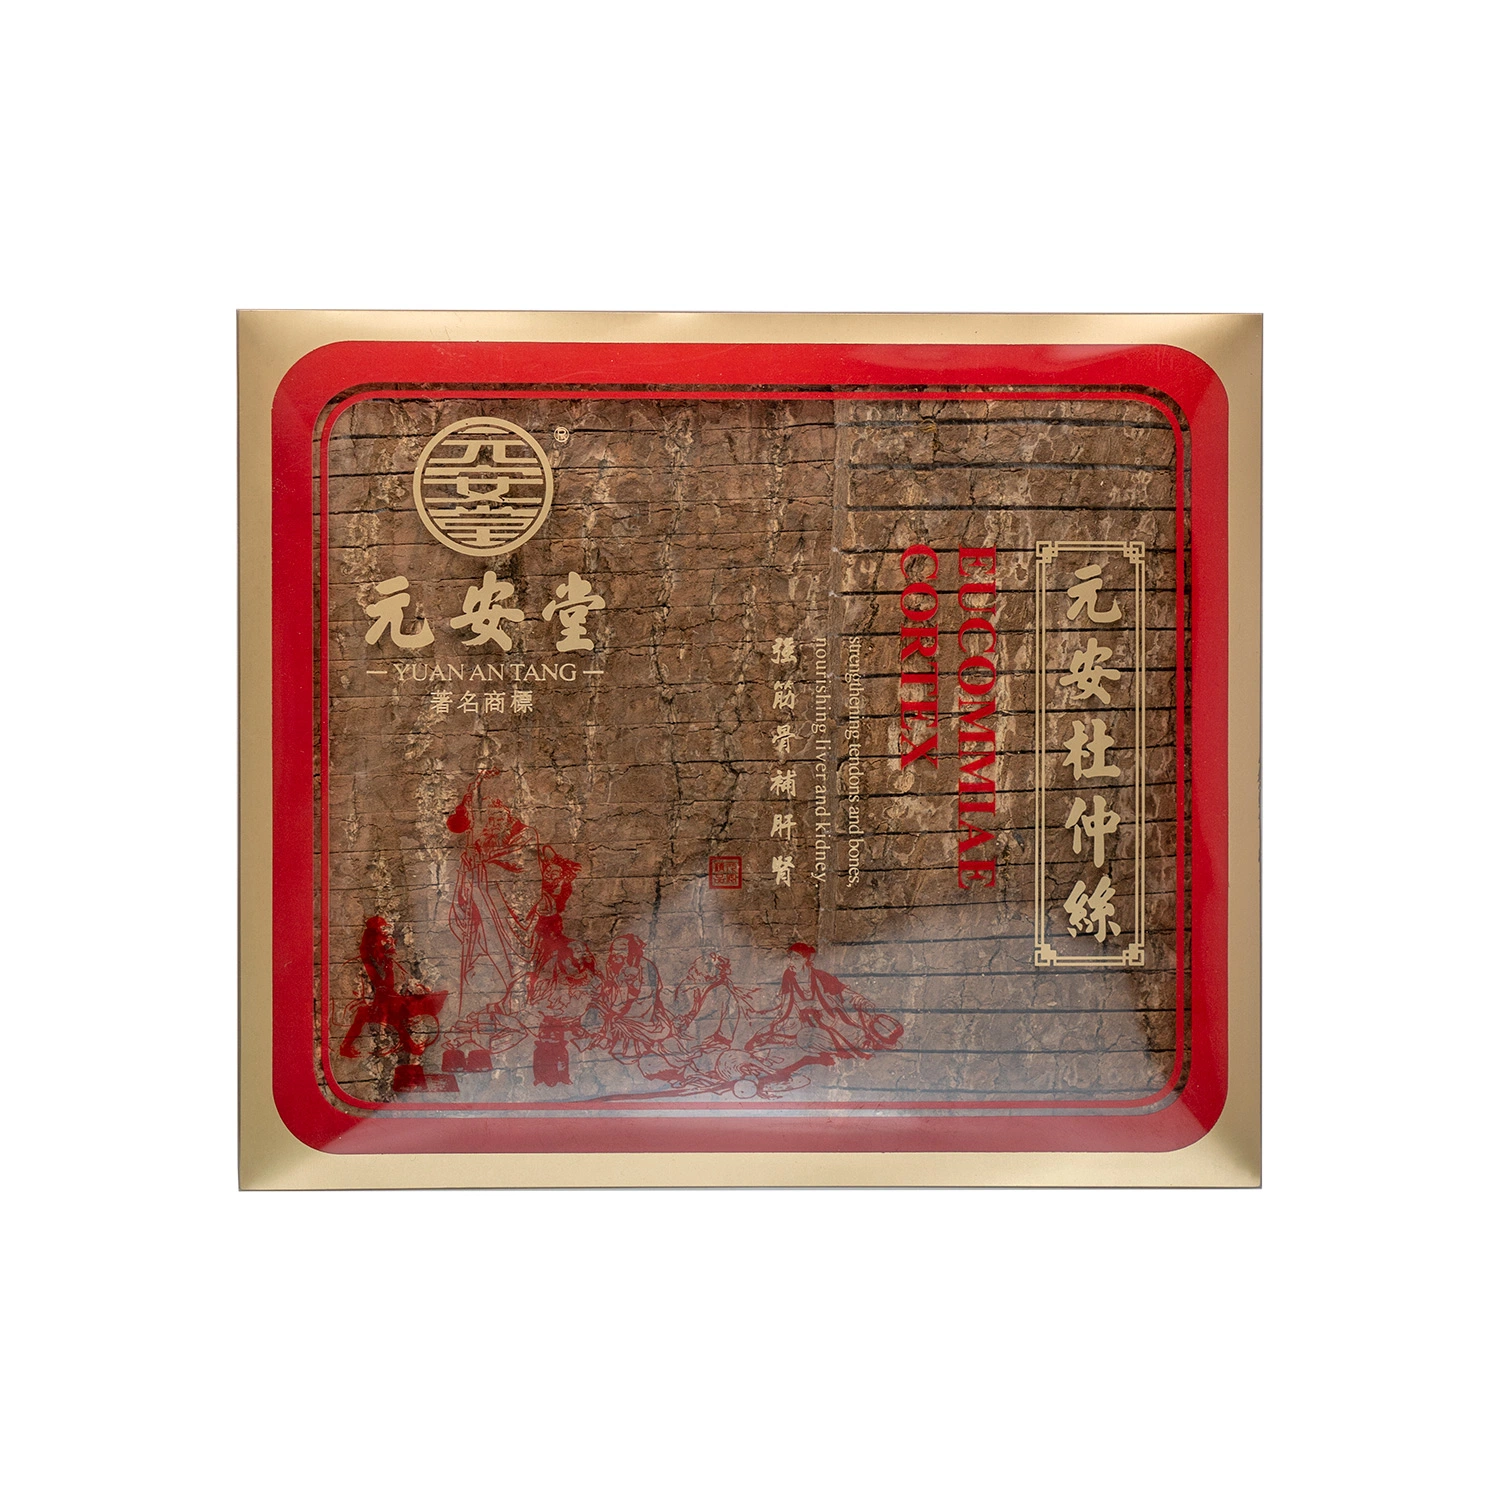 Traditionelle Chinesische Kräutermedizin Eucomiae Cortex Du Zhong